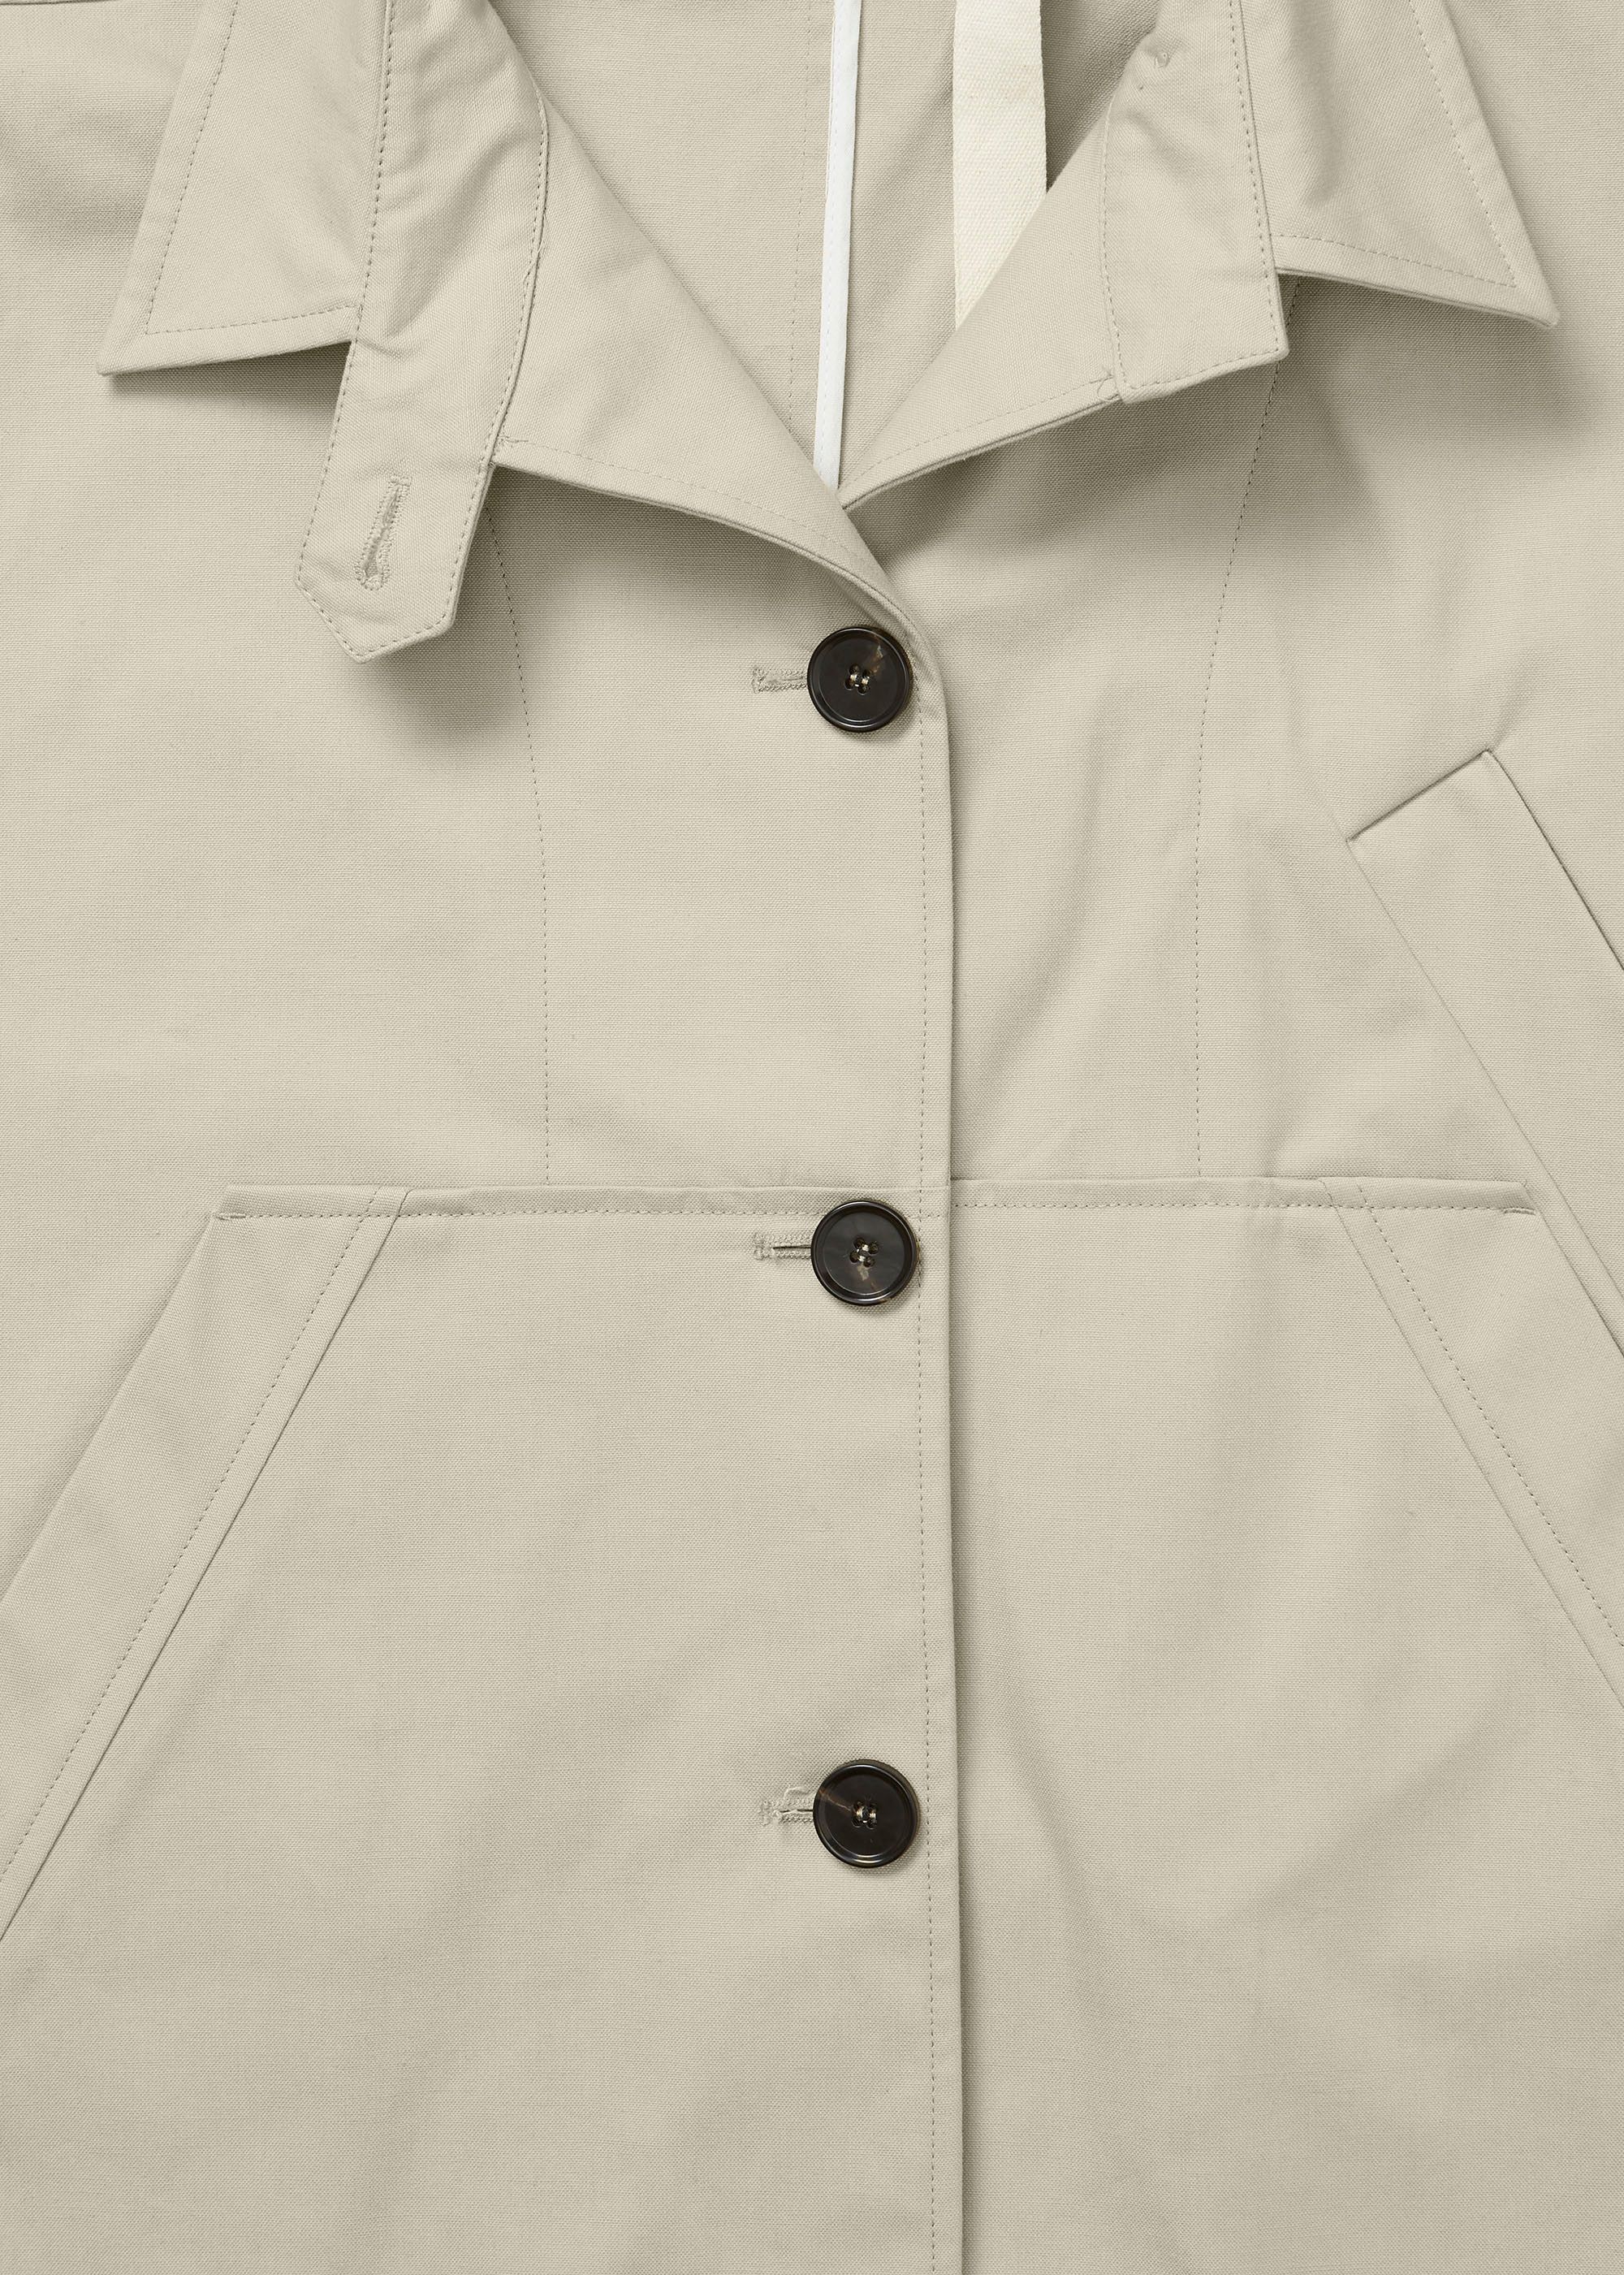 Outerwear - Jules ventile jacket